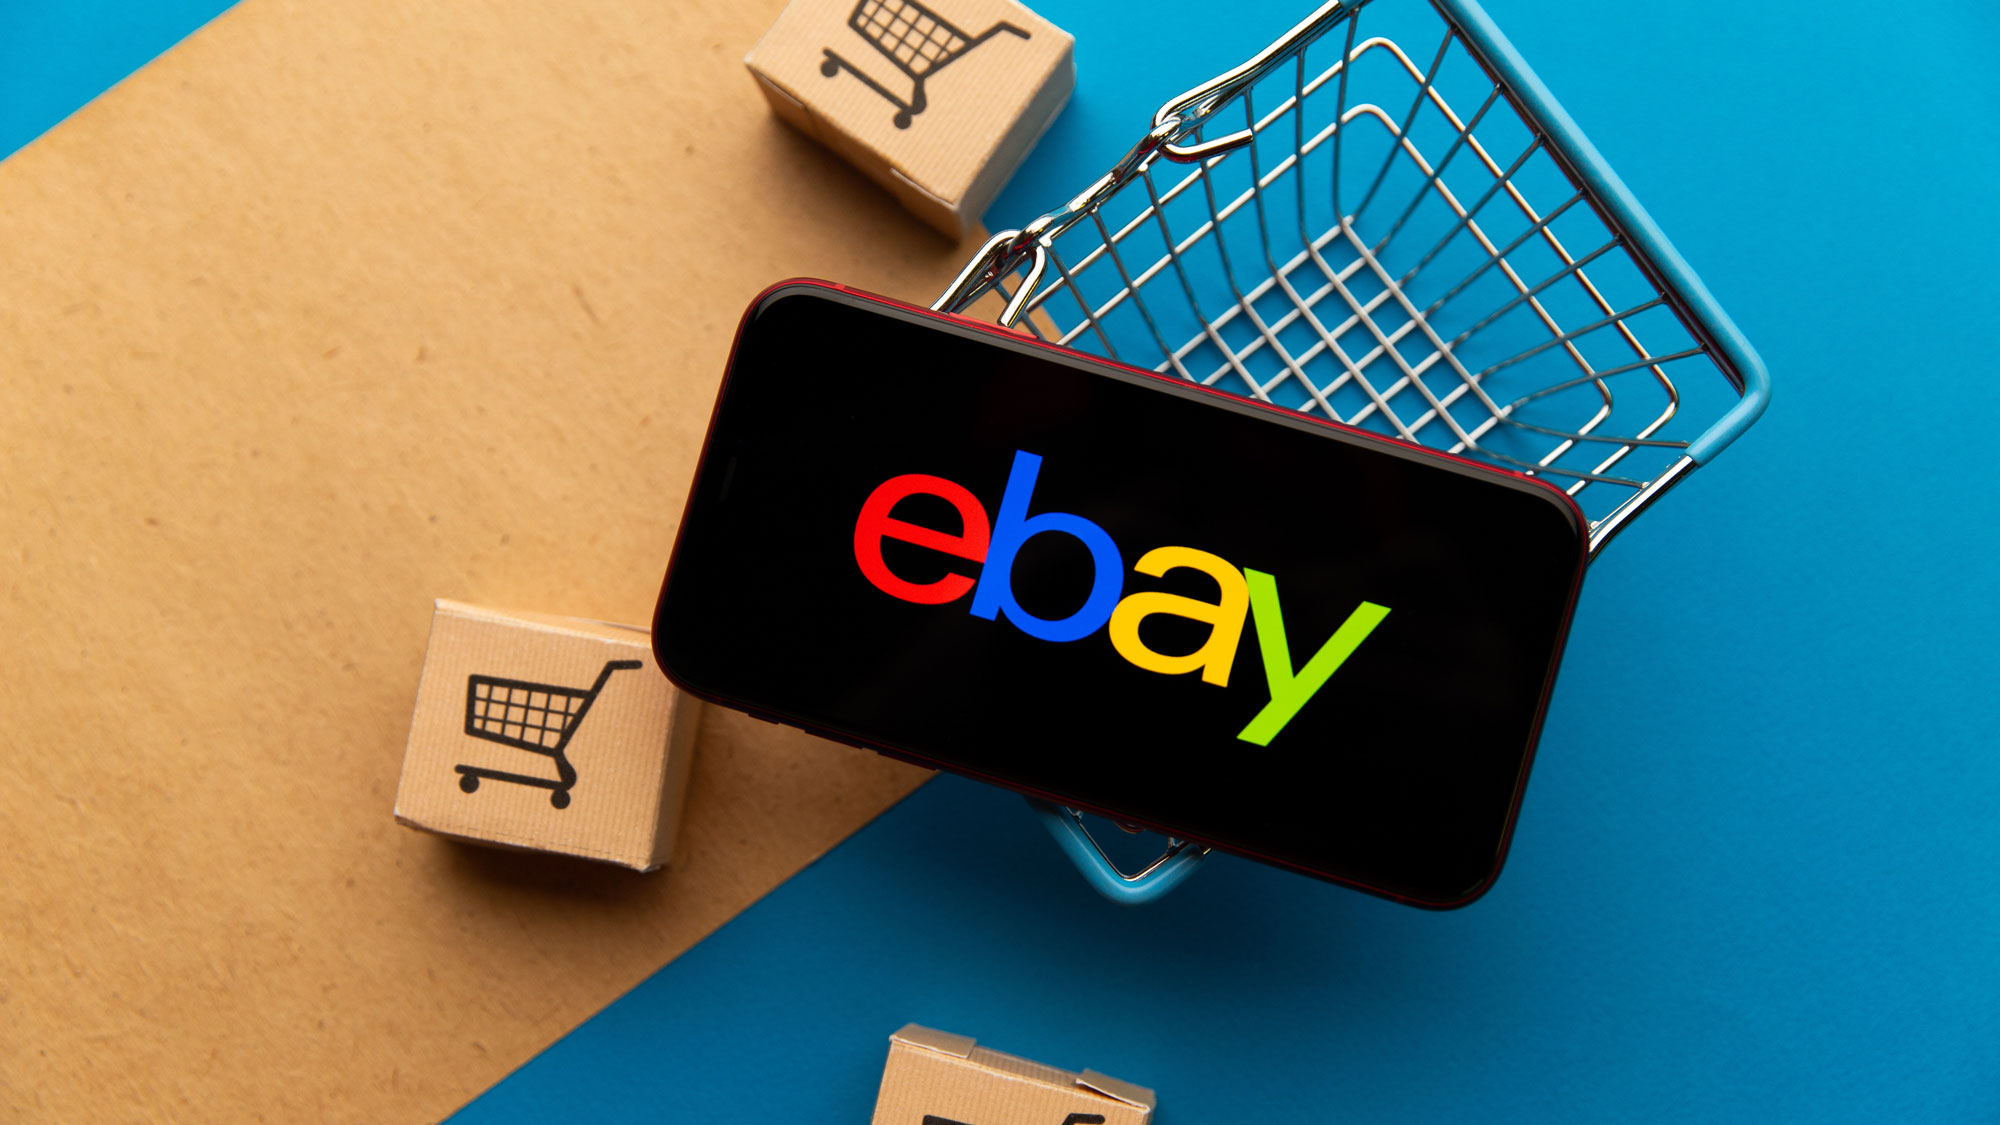 Ebay-Schriftzug auf Smartphone